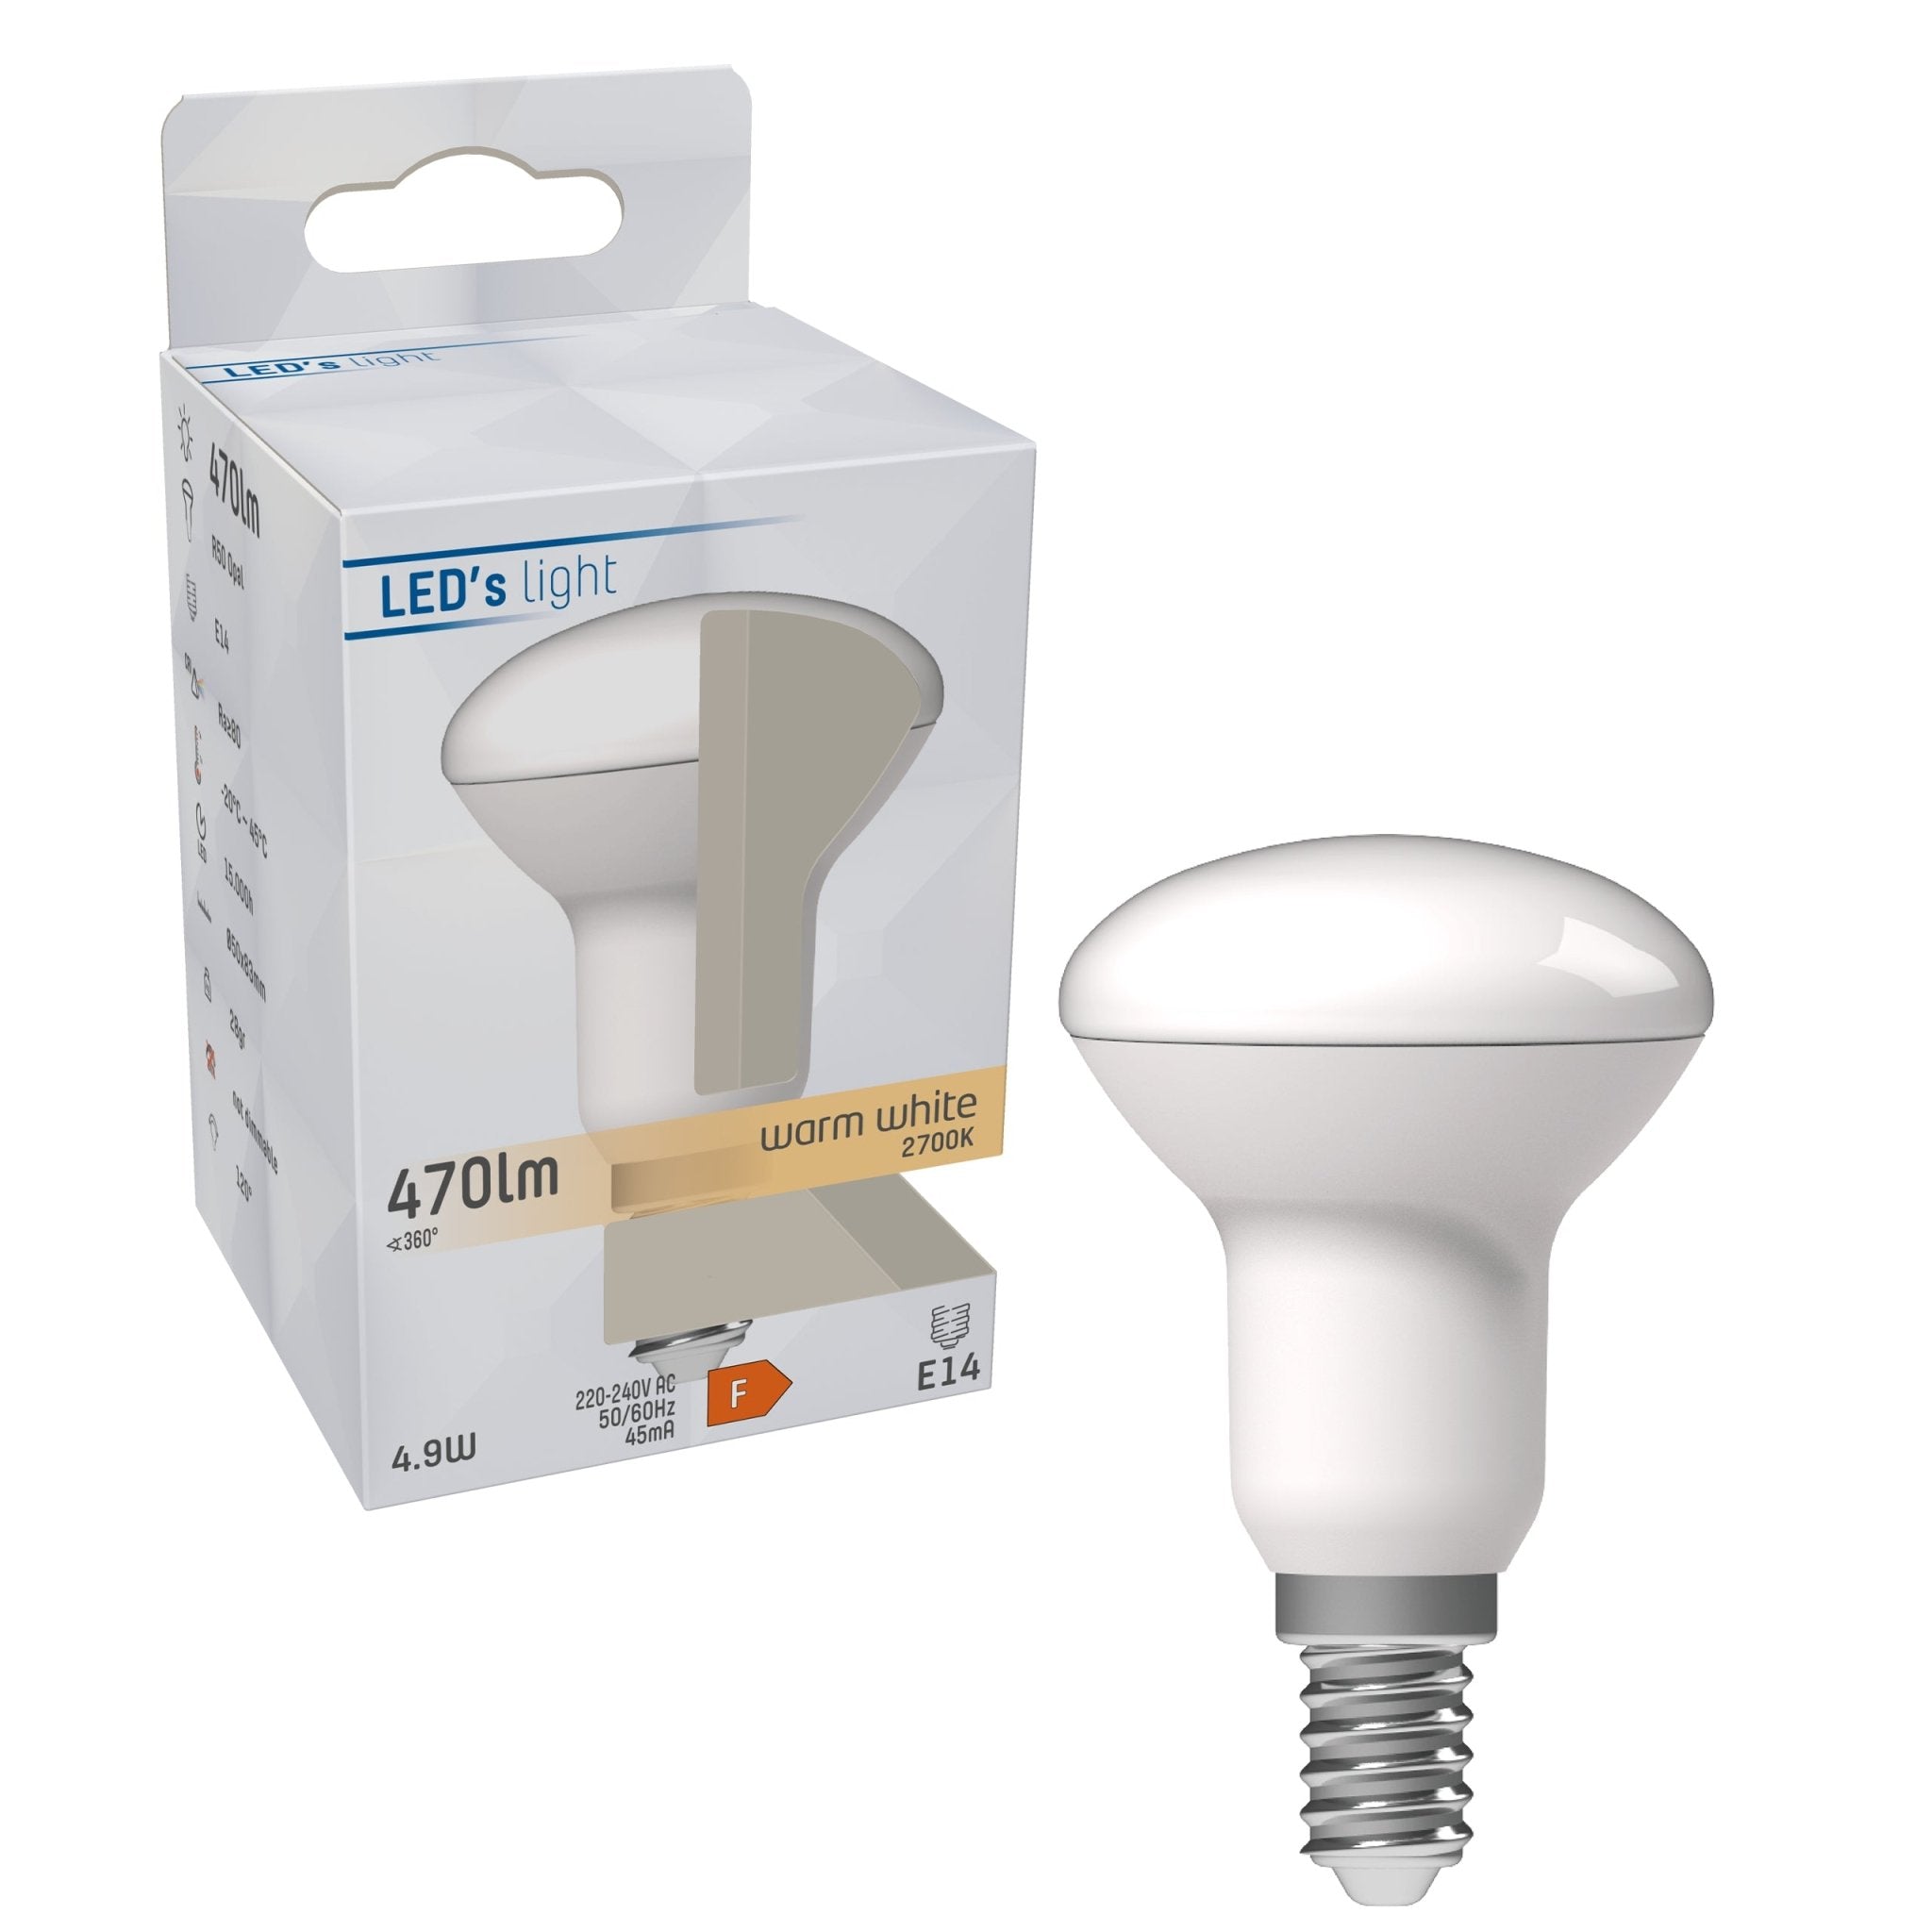 LED Reflectorlamp R50 met kleine E14 fitting kopen? 